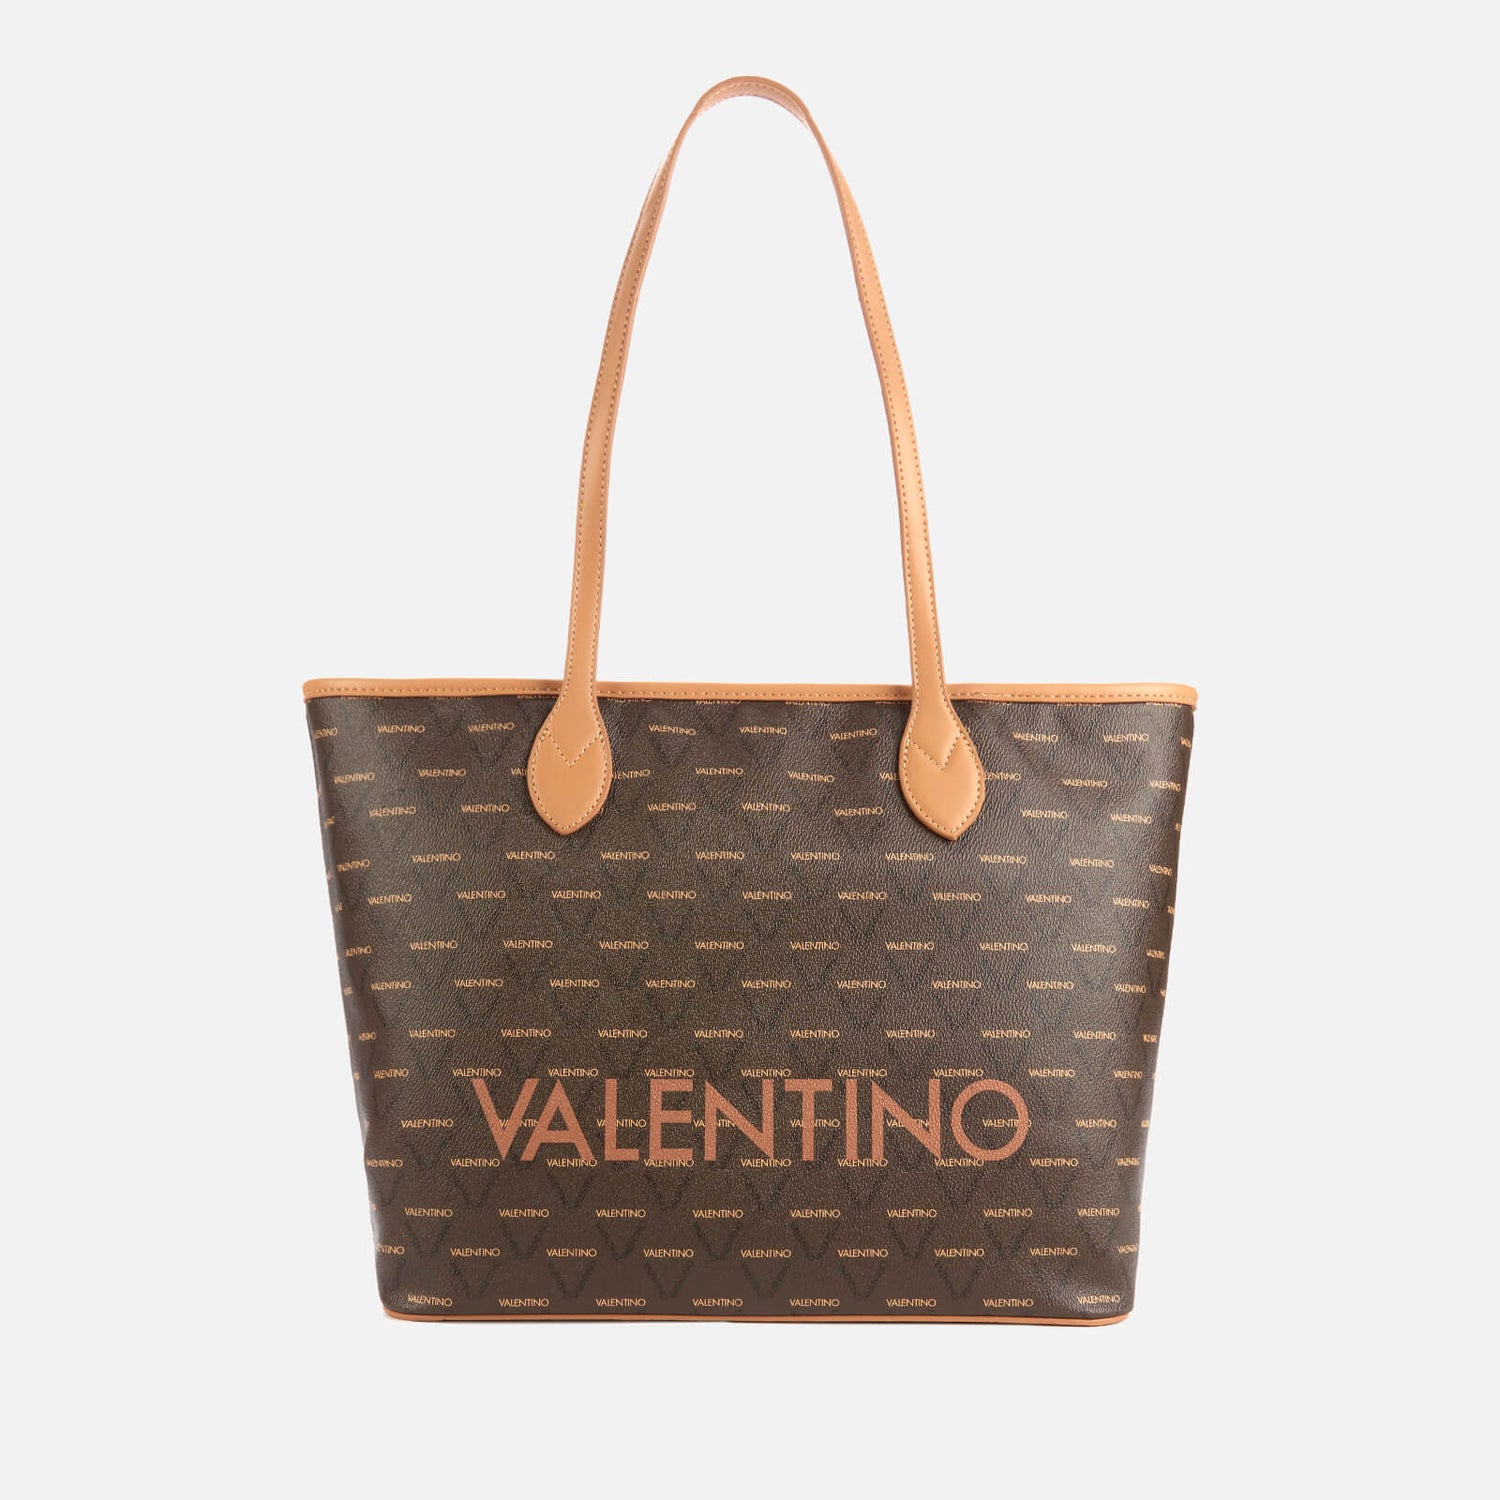 Valentino Women's Liuto Tote Bag - Tan/Multi